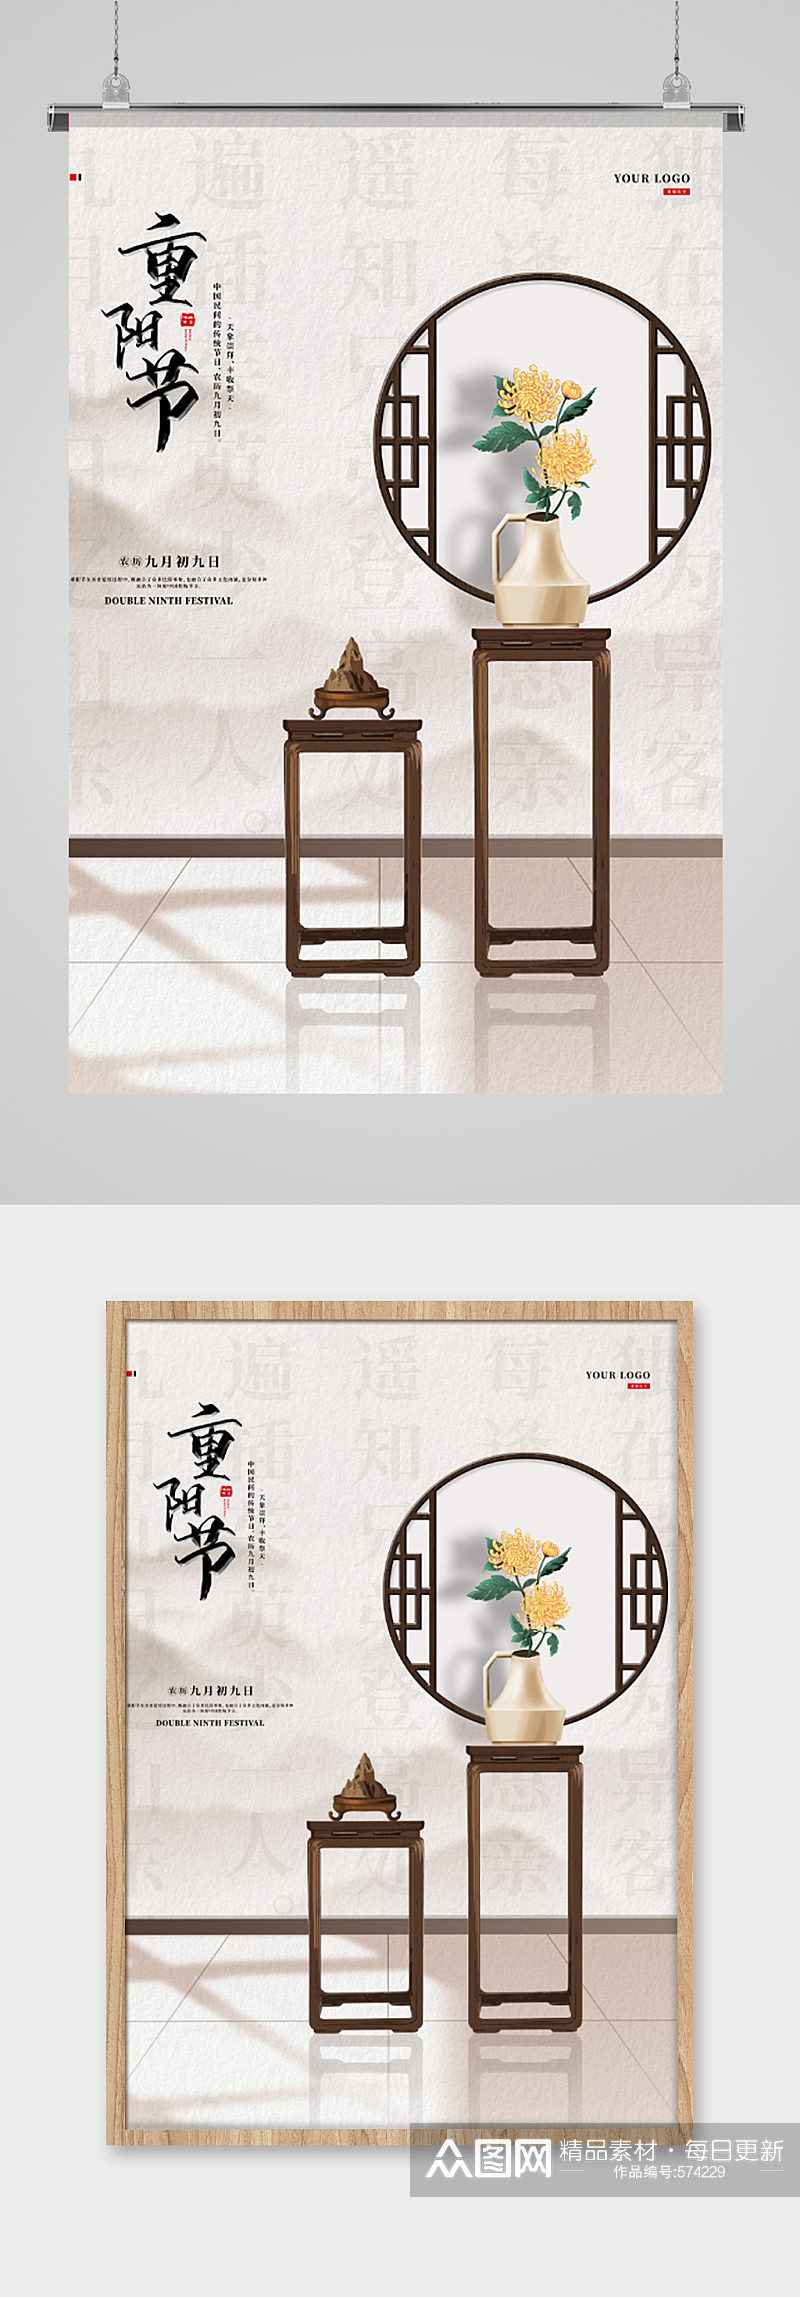 九月初九重阳节宣传海报素材